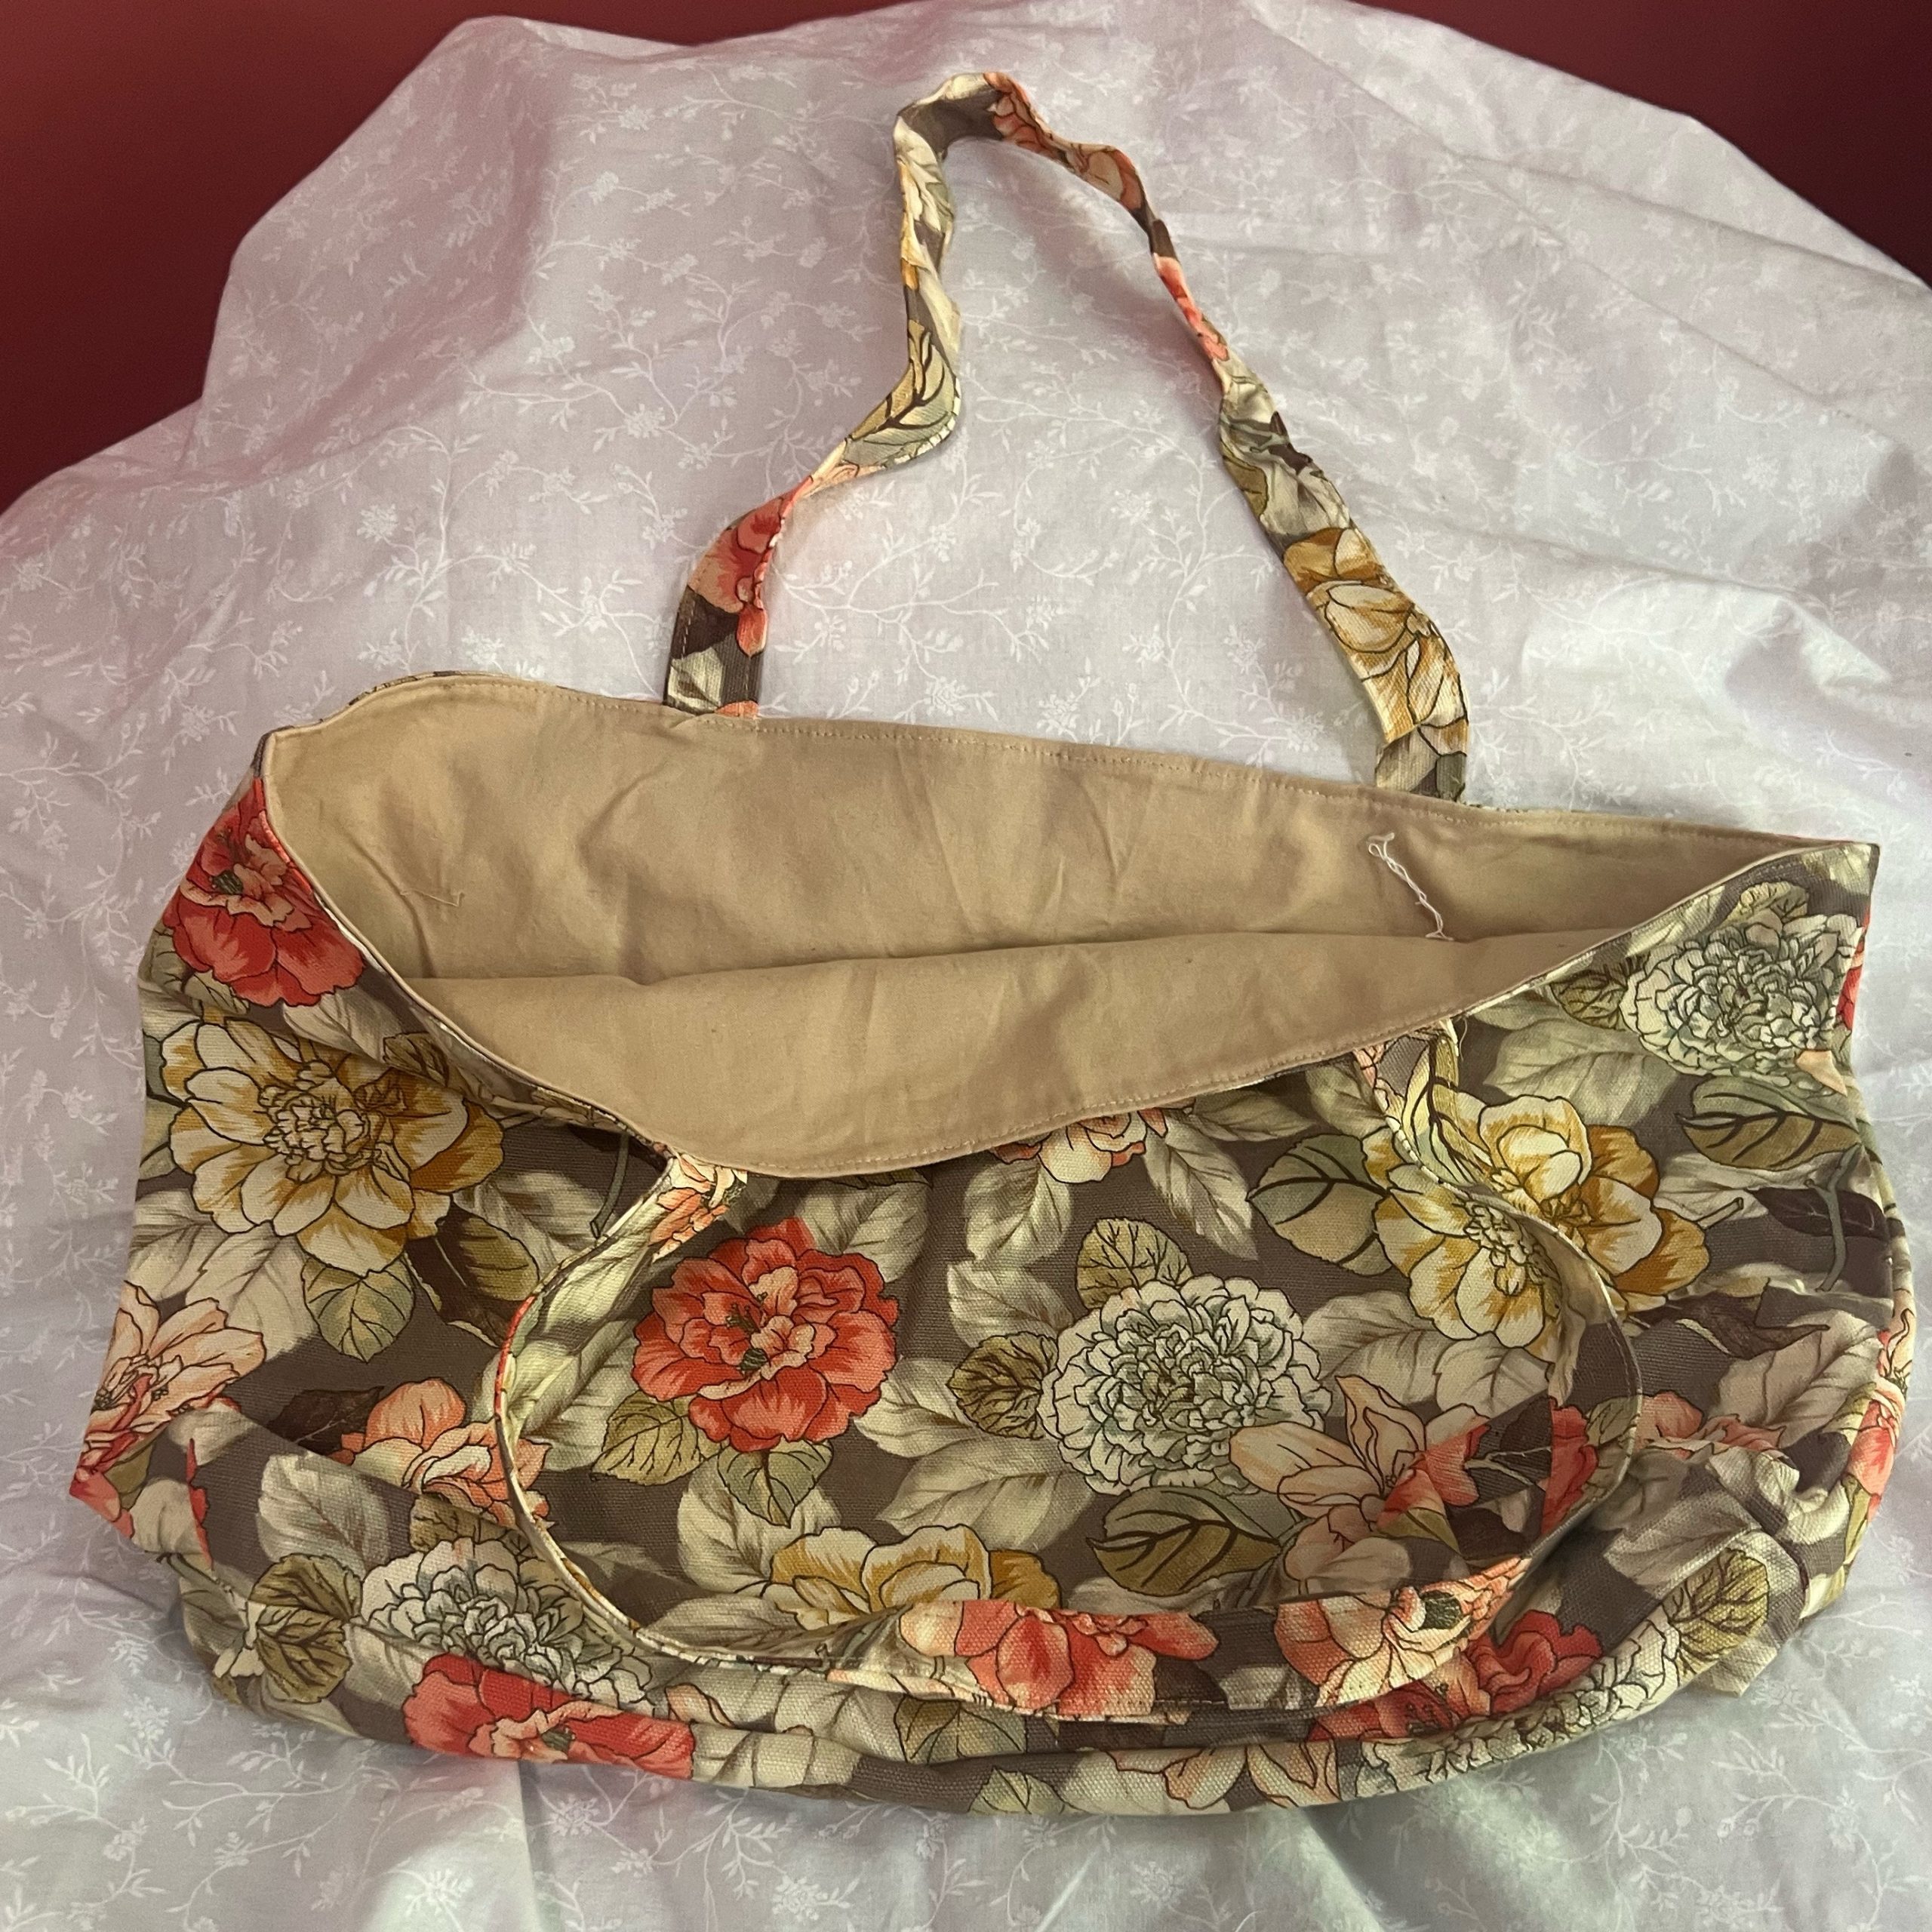 7- Stylish & Sustainable Fabric Shopping Bag